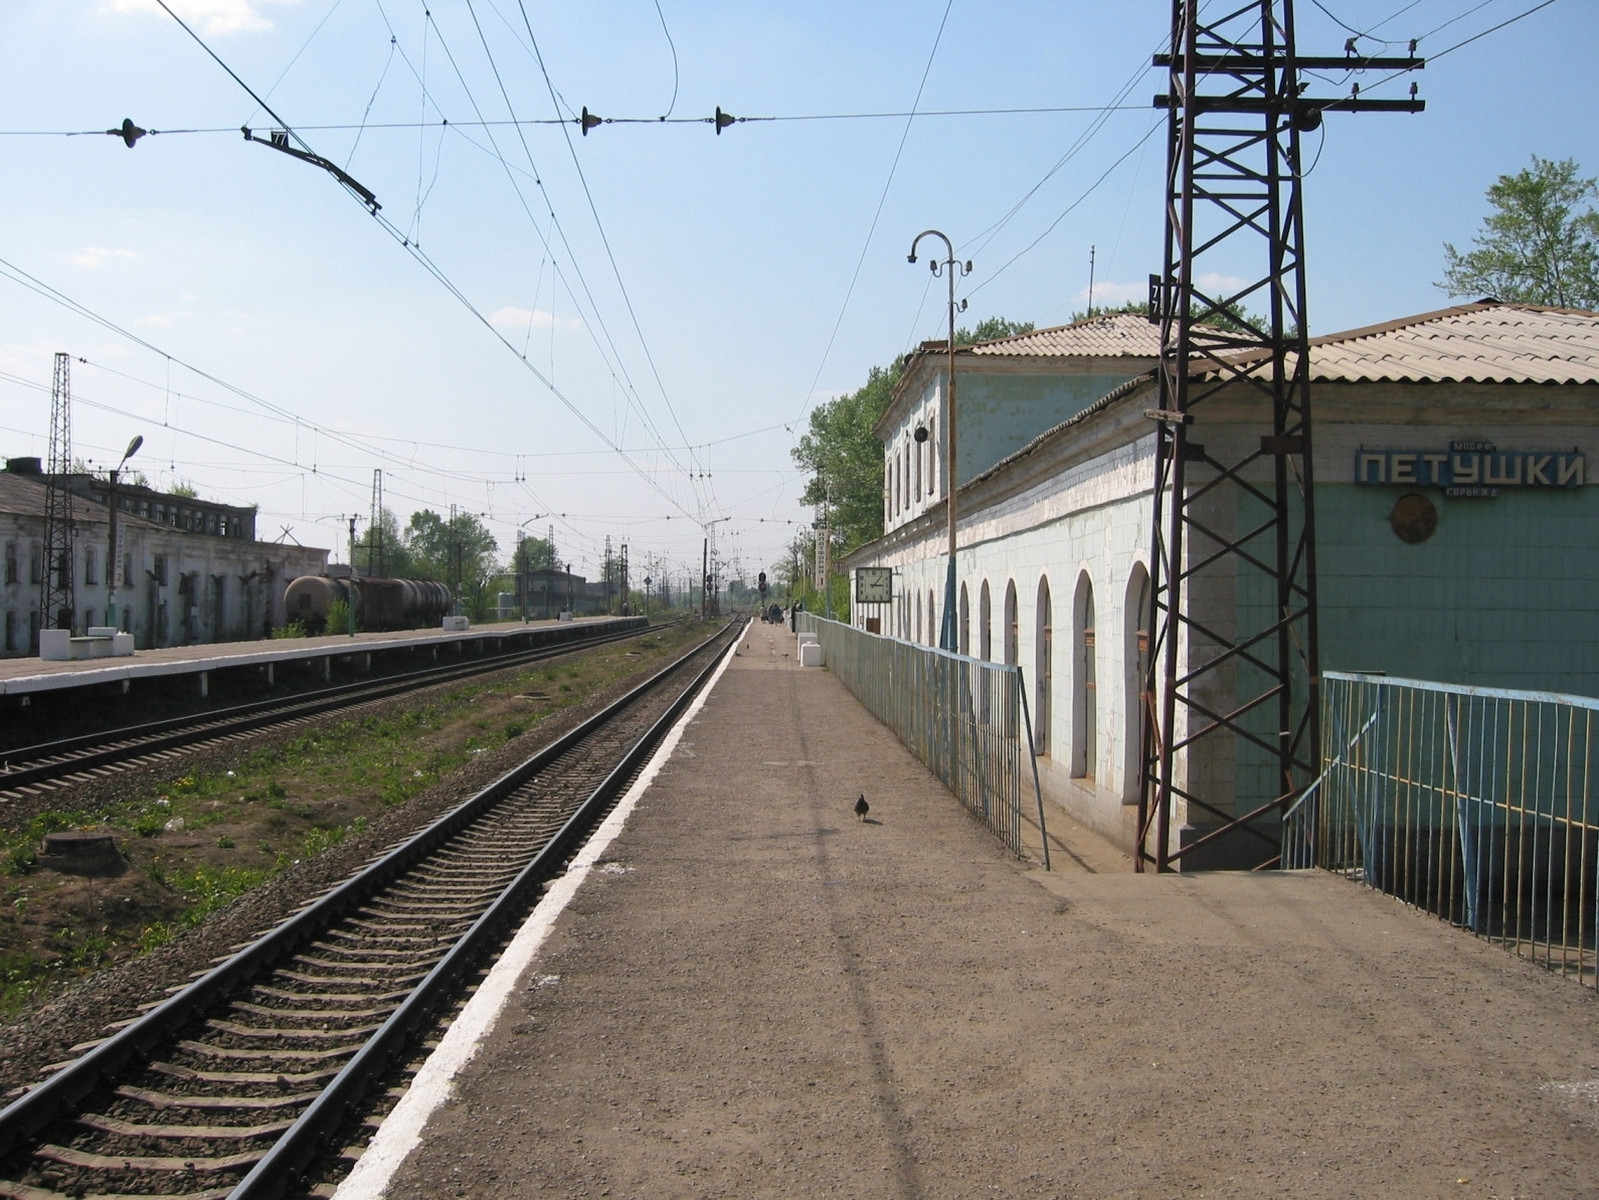 KUrsker Bahnhof